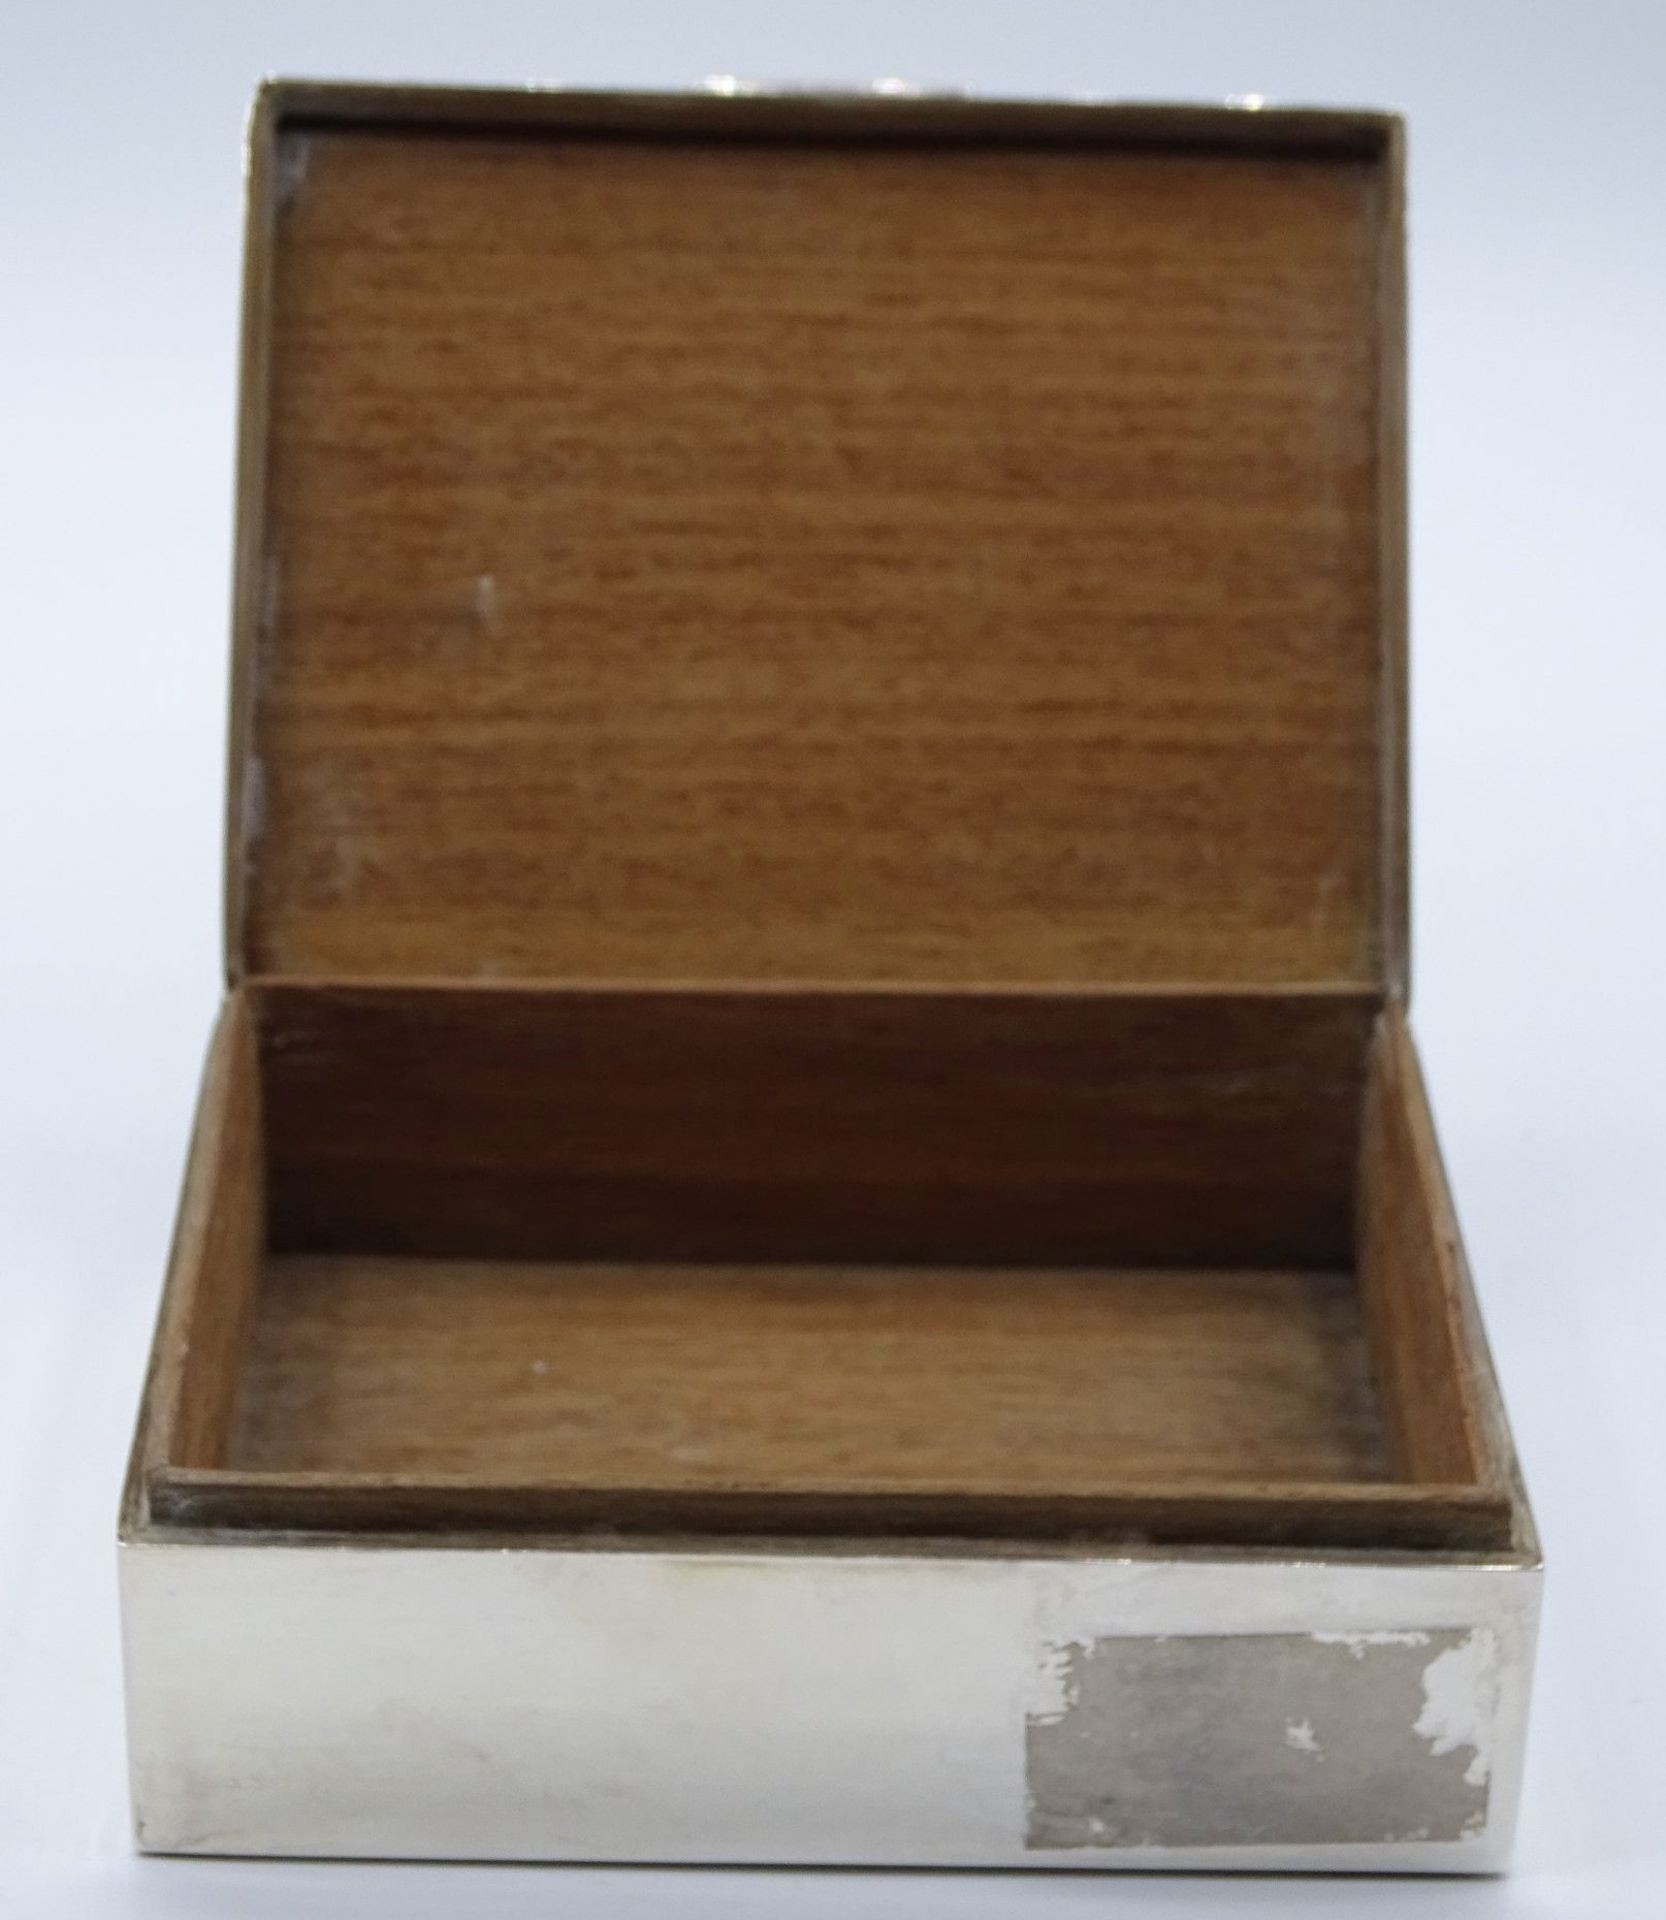 versilberte Zigarettendose, innen Holz, H-4 cm, 9x11 cm - Image 3 of 4